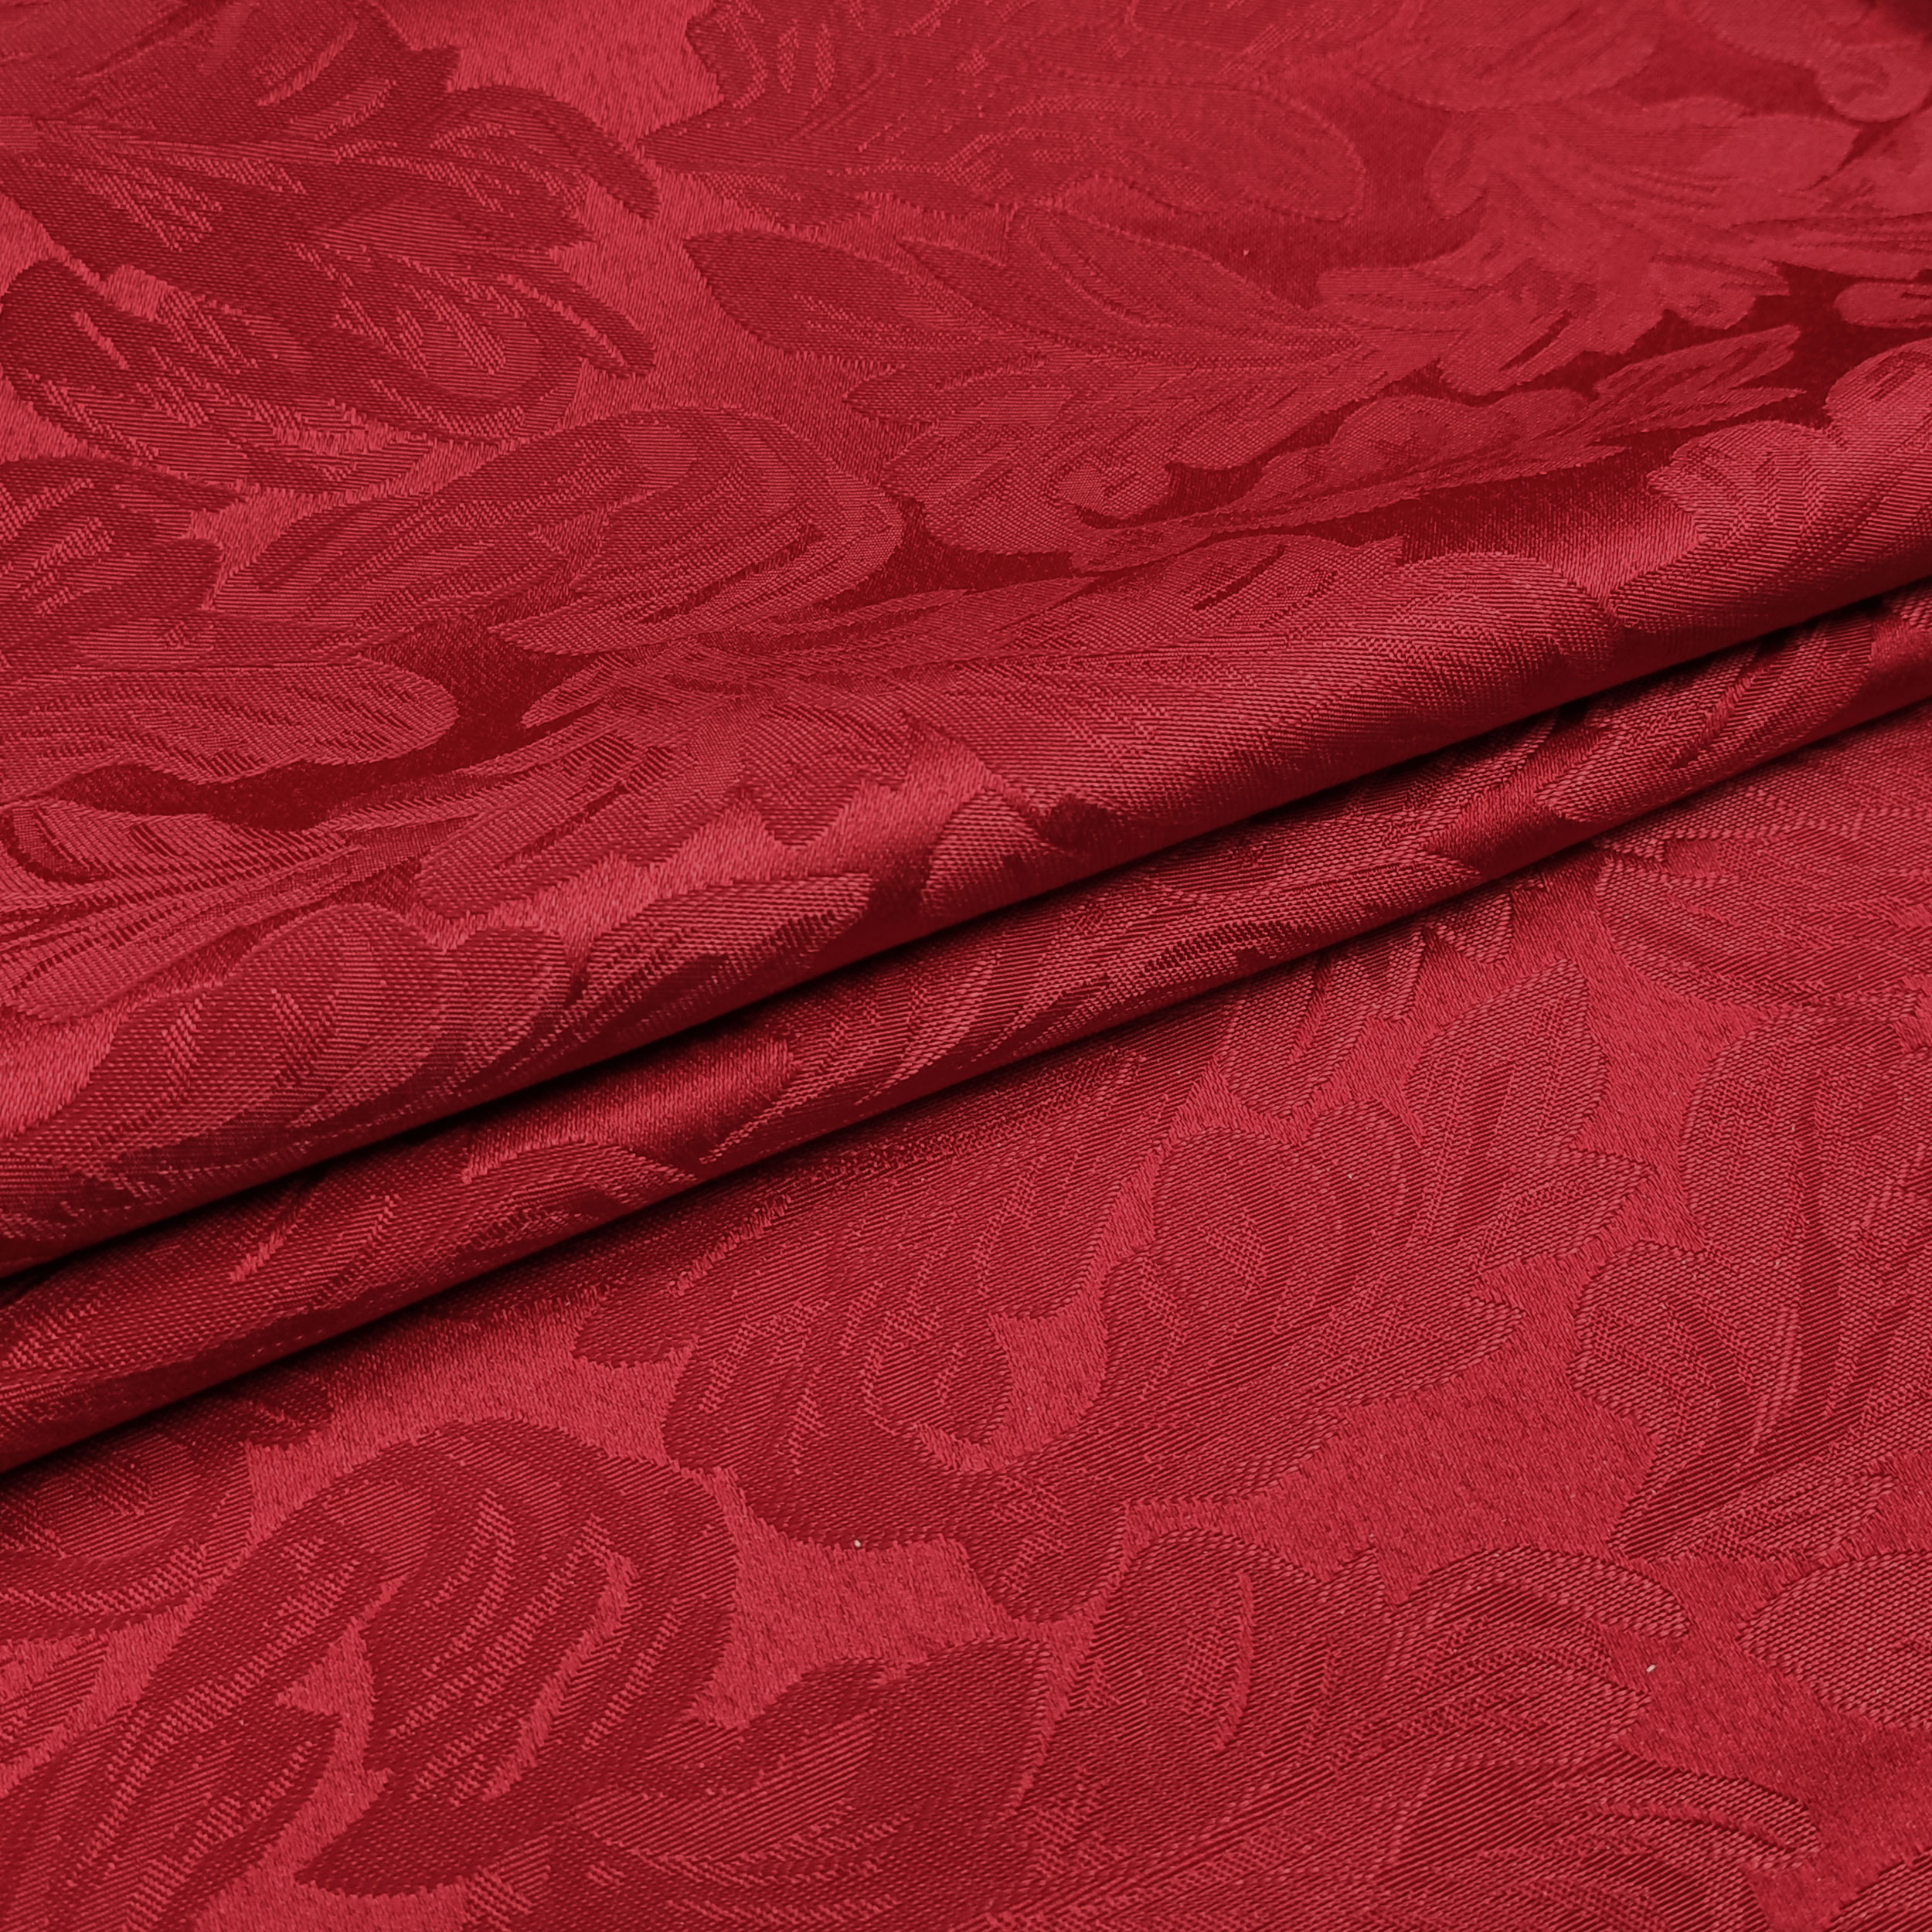 tessuto-arredo-misto-cotone-damascato-rosso